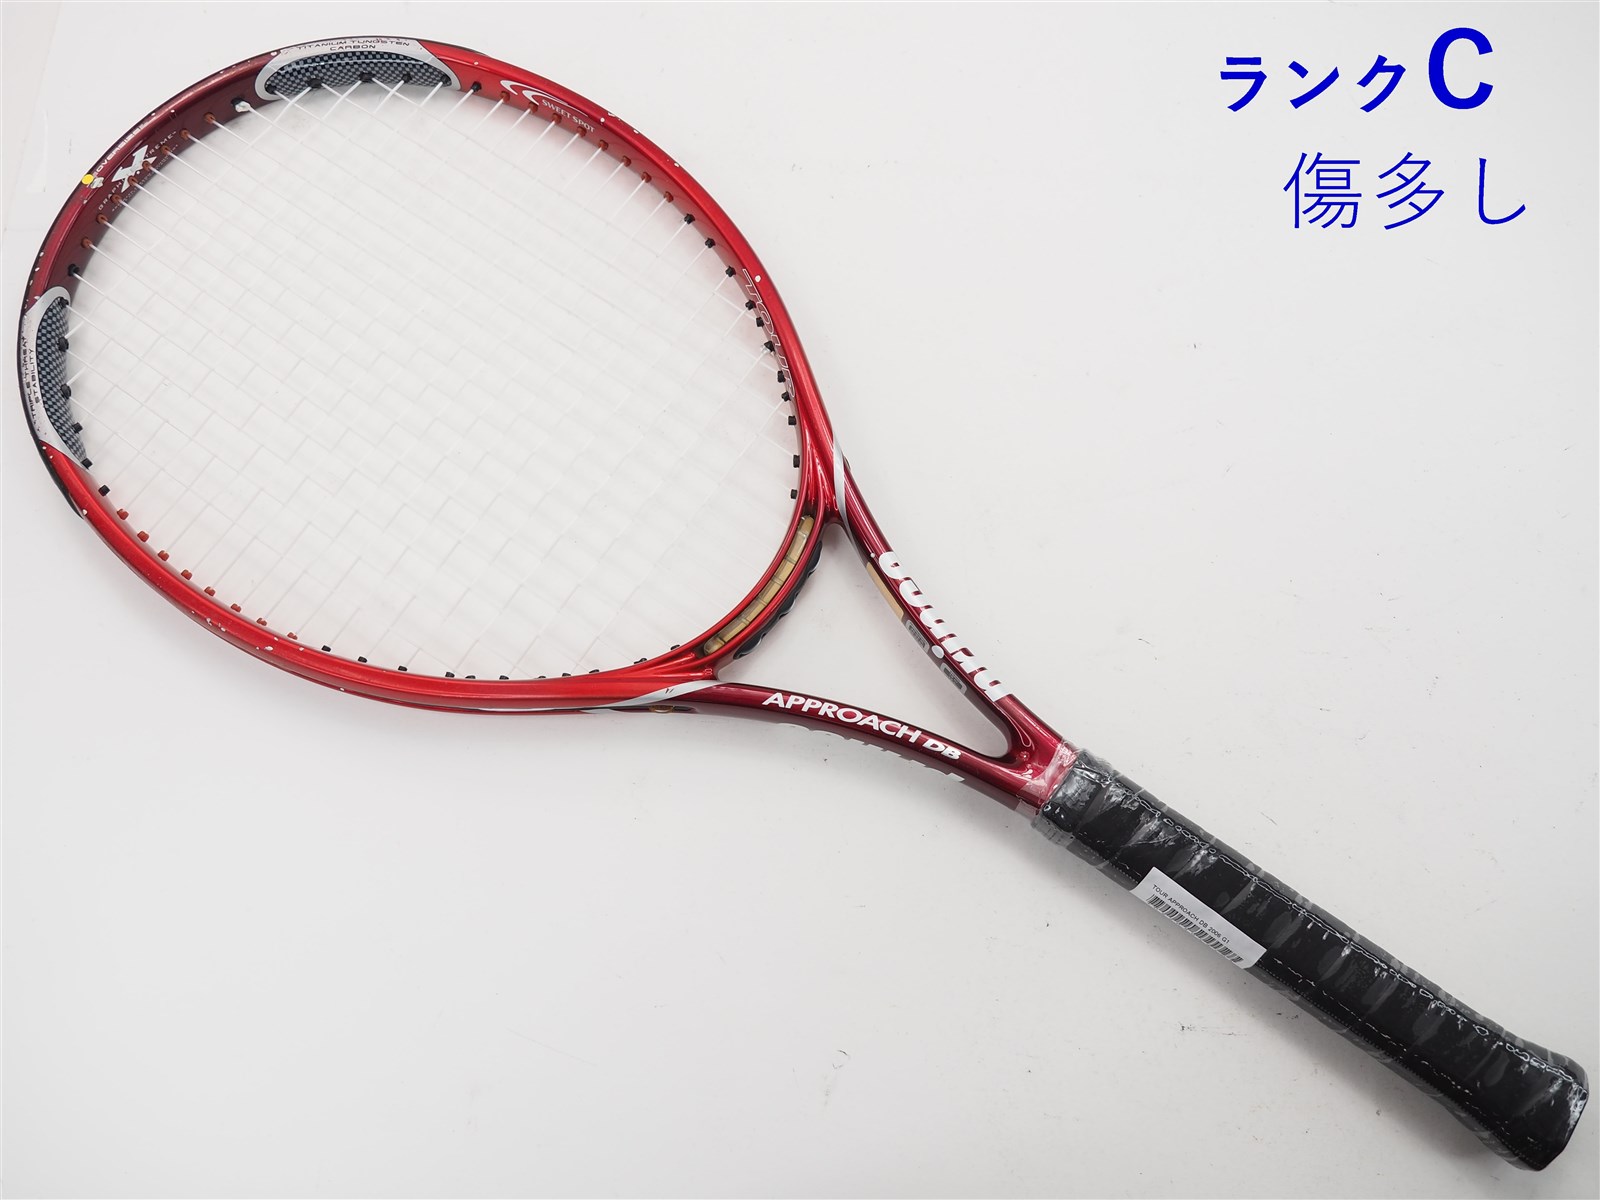 大特価格安現行モデル★prince プリンス ツアー TOUR 95 2020 7TJ123 グリップ2 テニスラケット★中古 プリンス